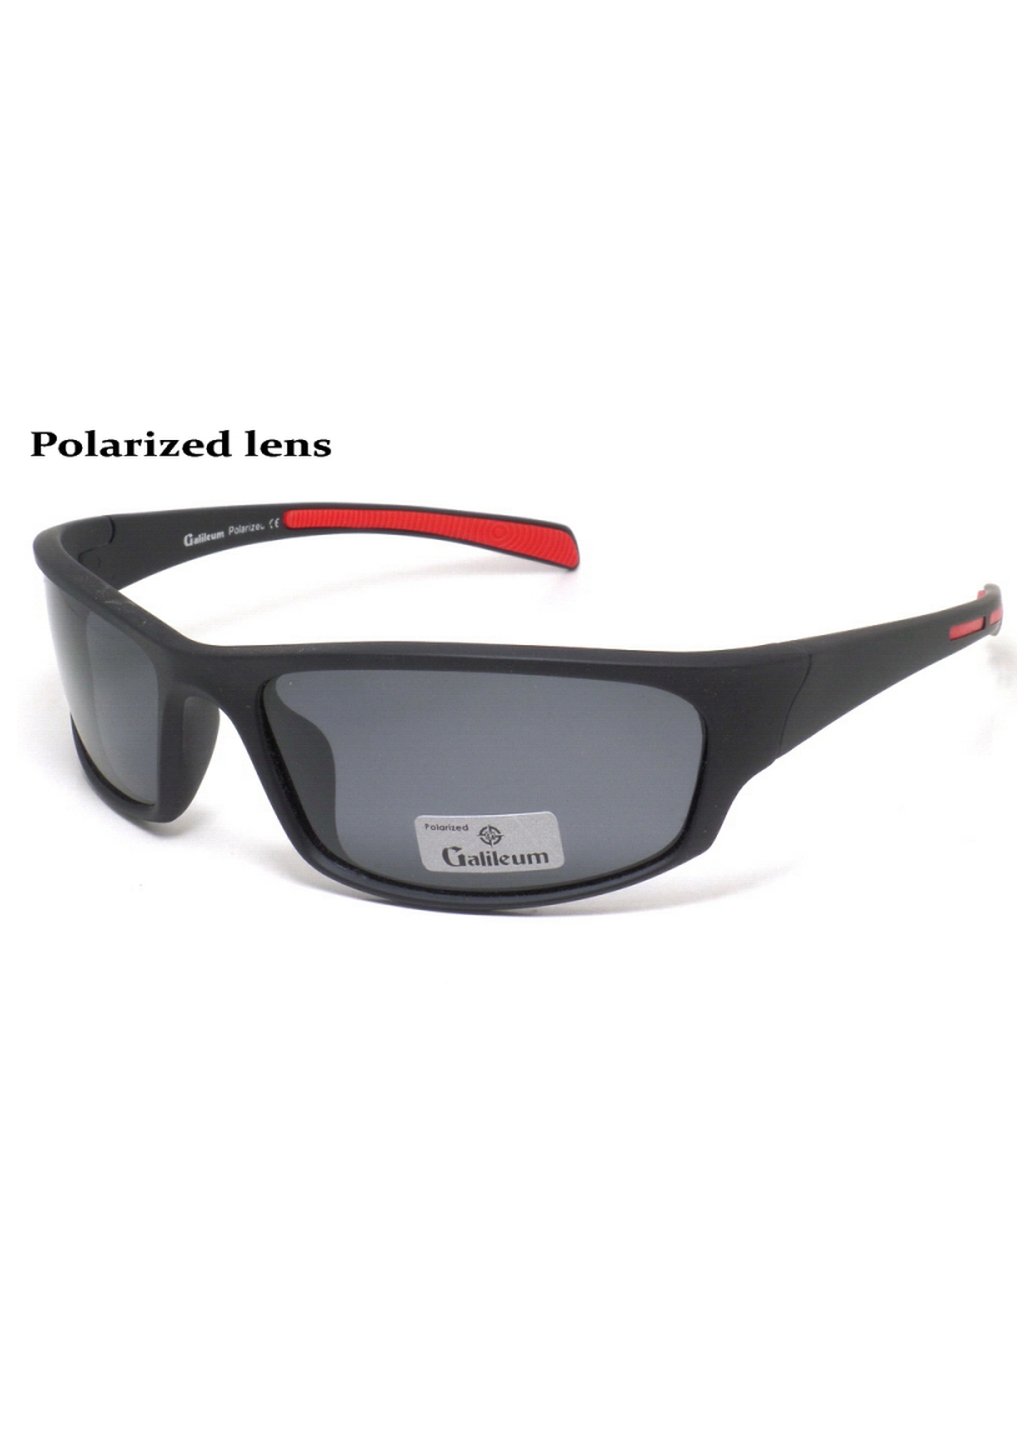 Купить Спортивные очки с поляризацией Galileum 125011 в интернет-магазине